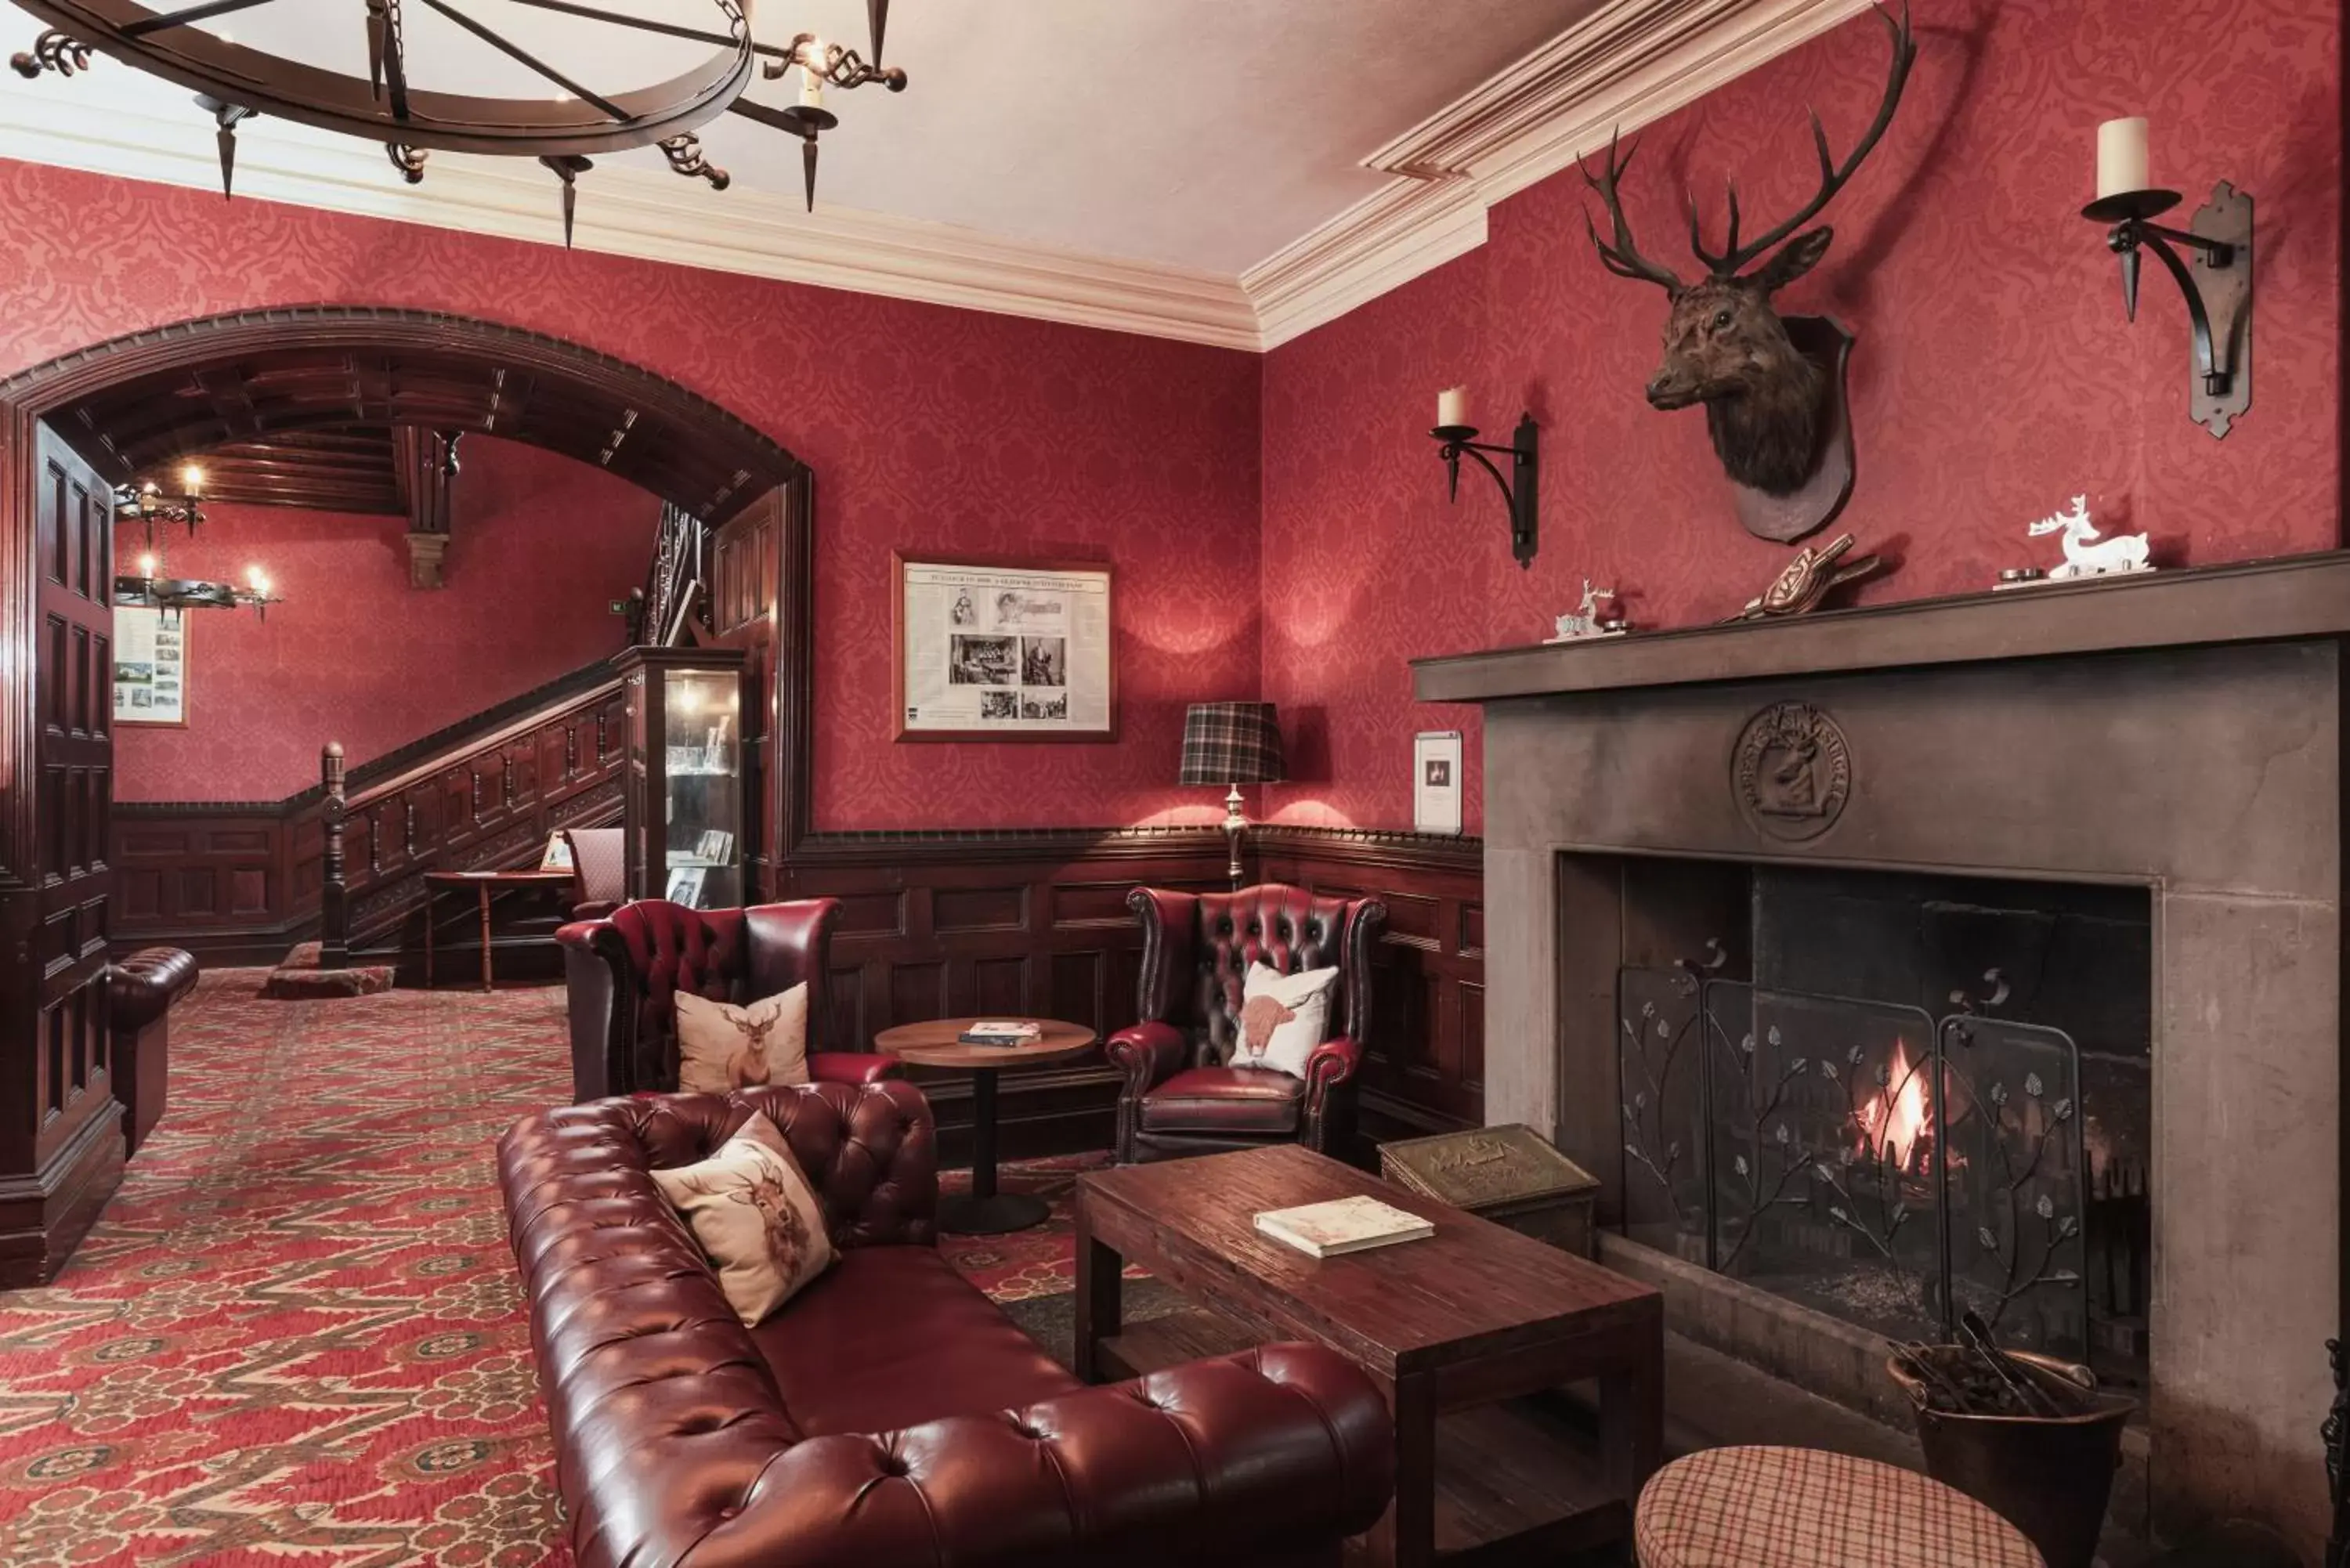 Lobby or reception in Tulloch Castle Hotel ‘A Bespoke Hotel’